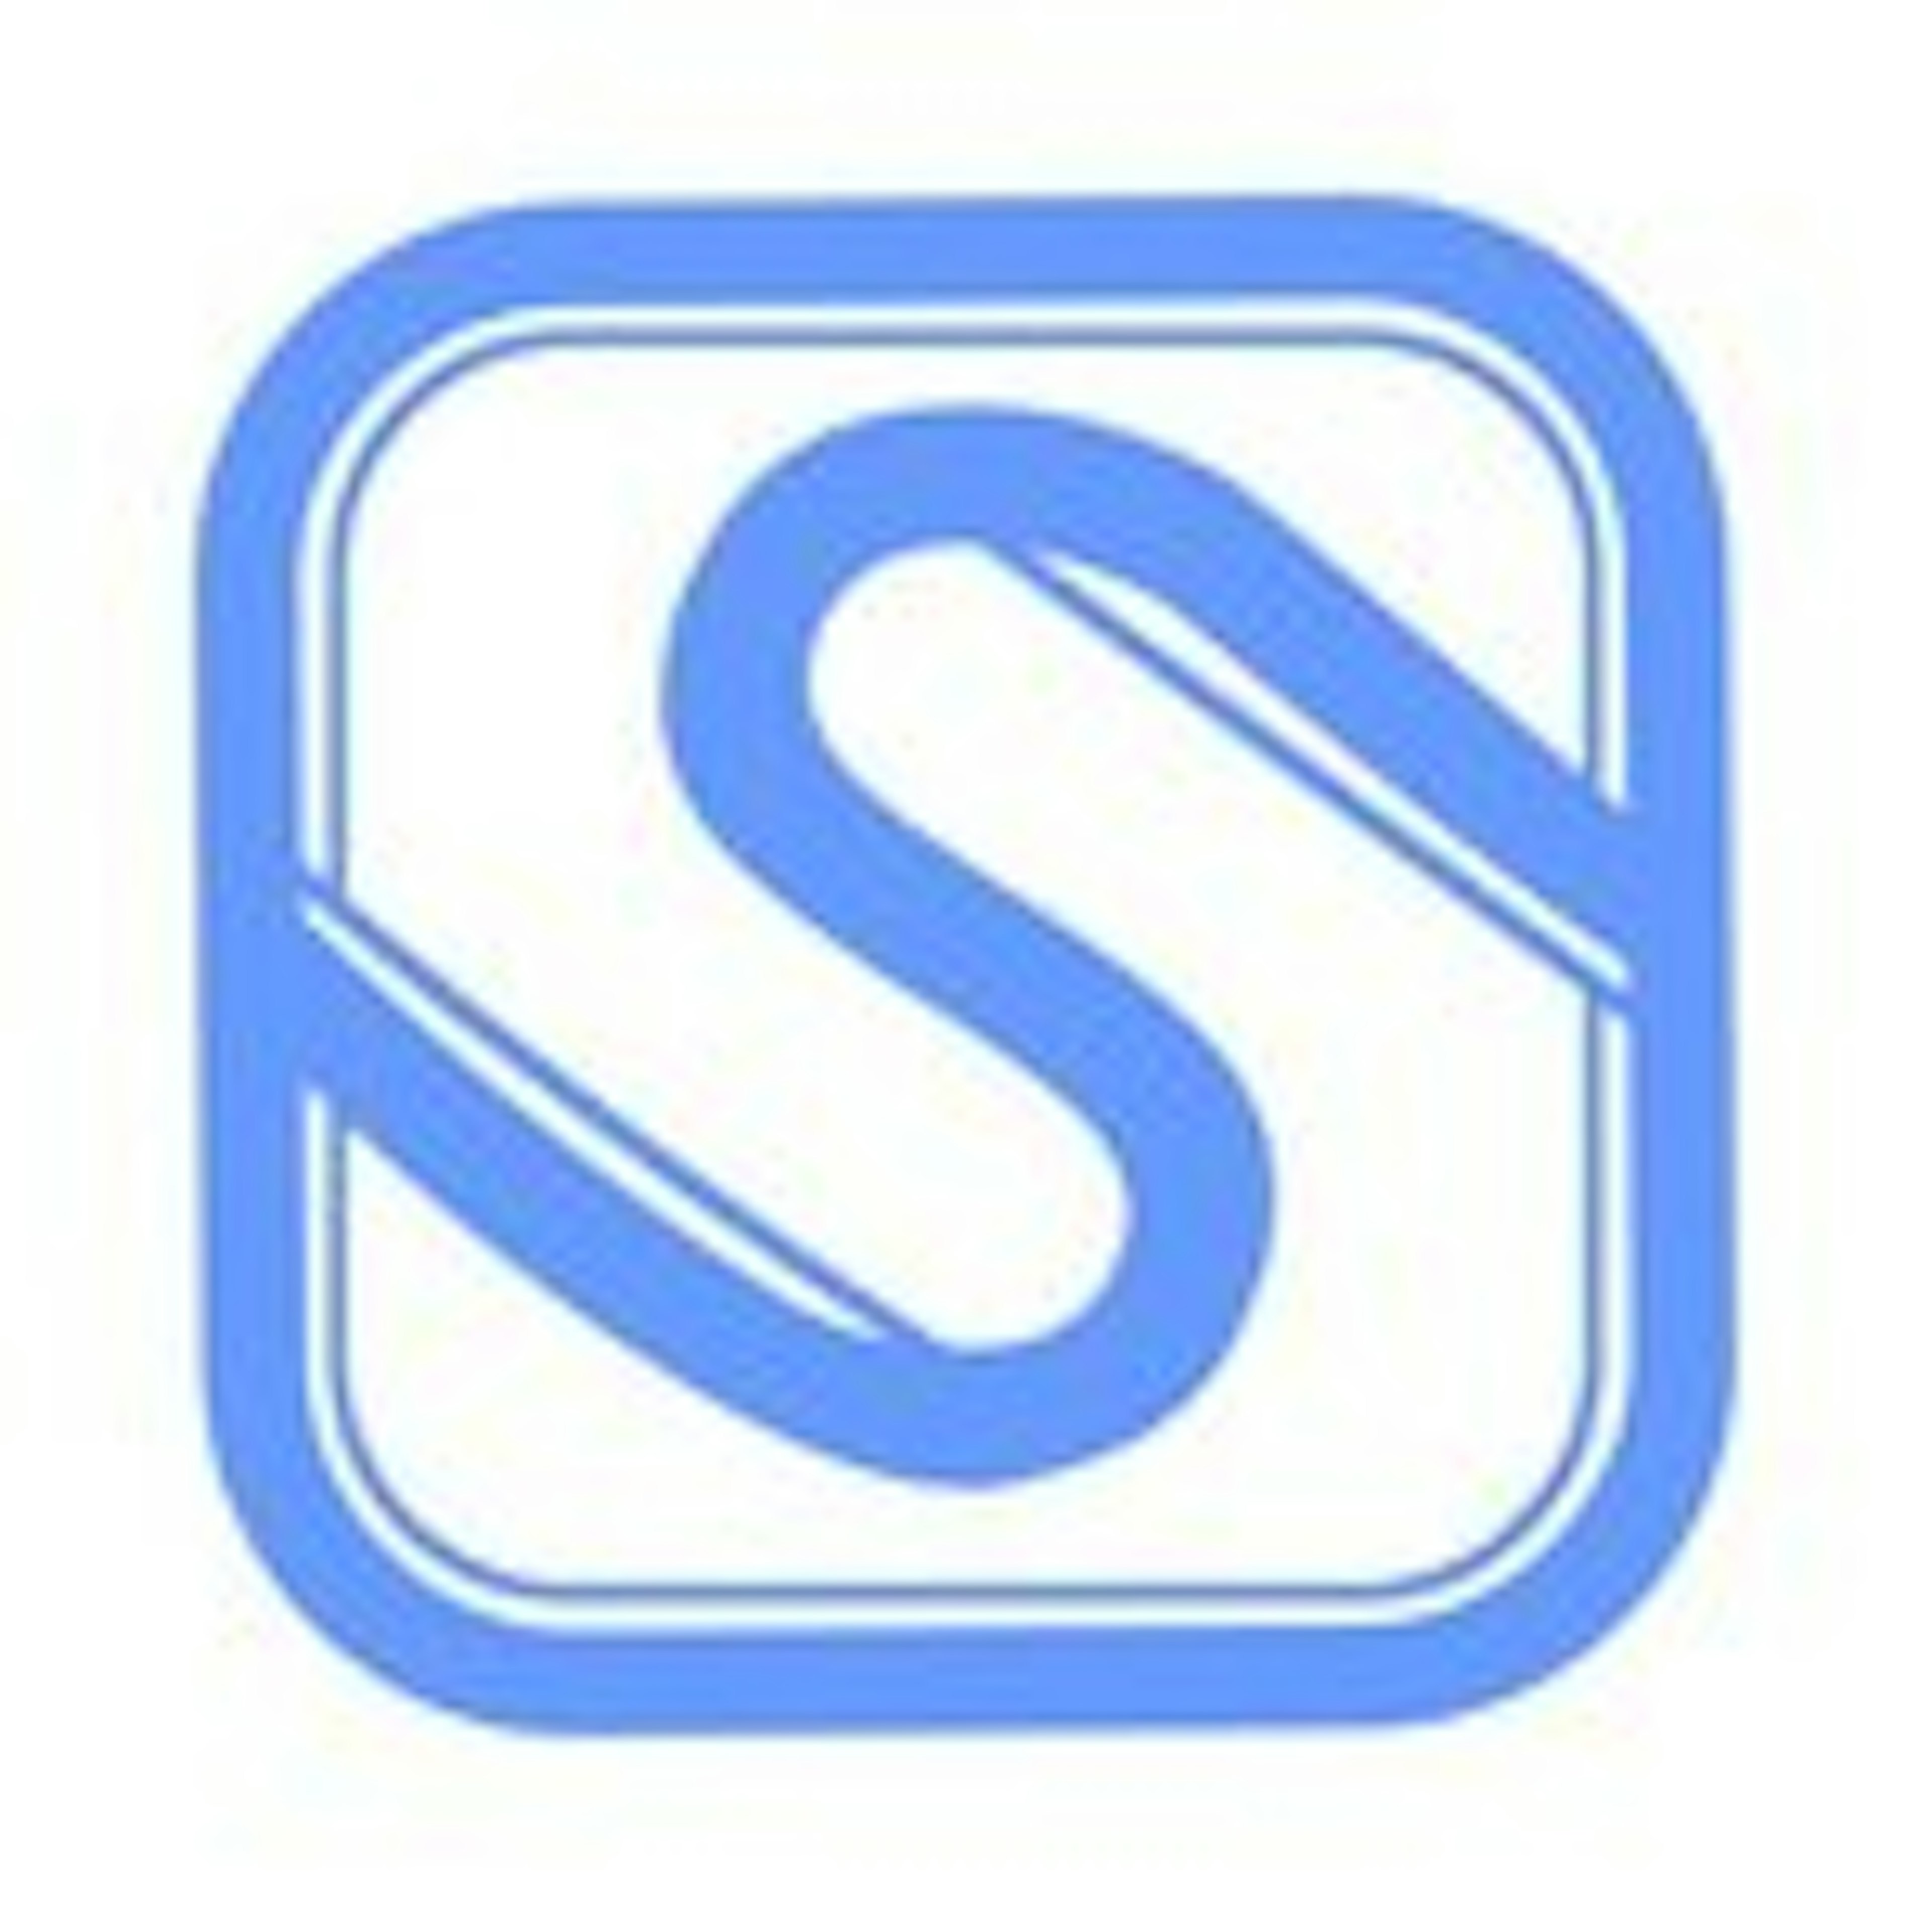 SocialBu Logo